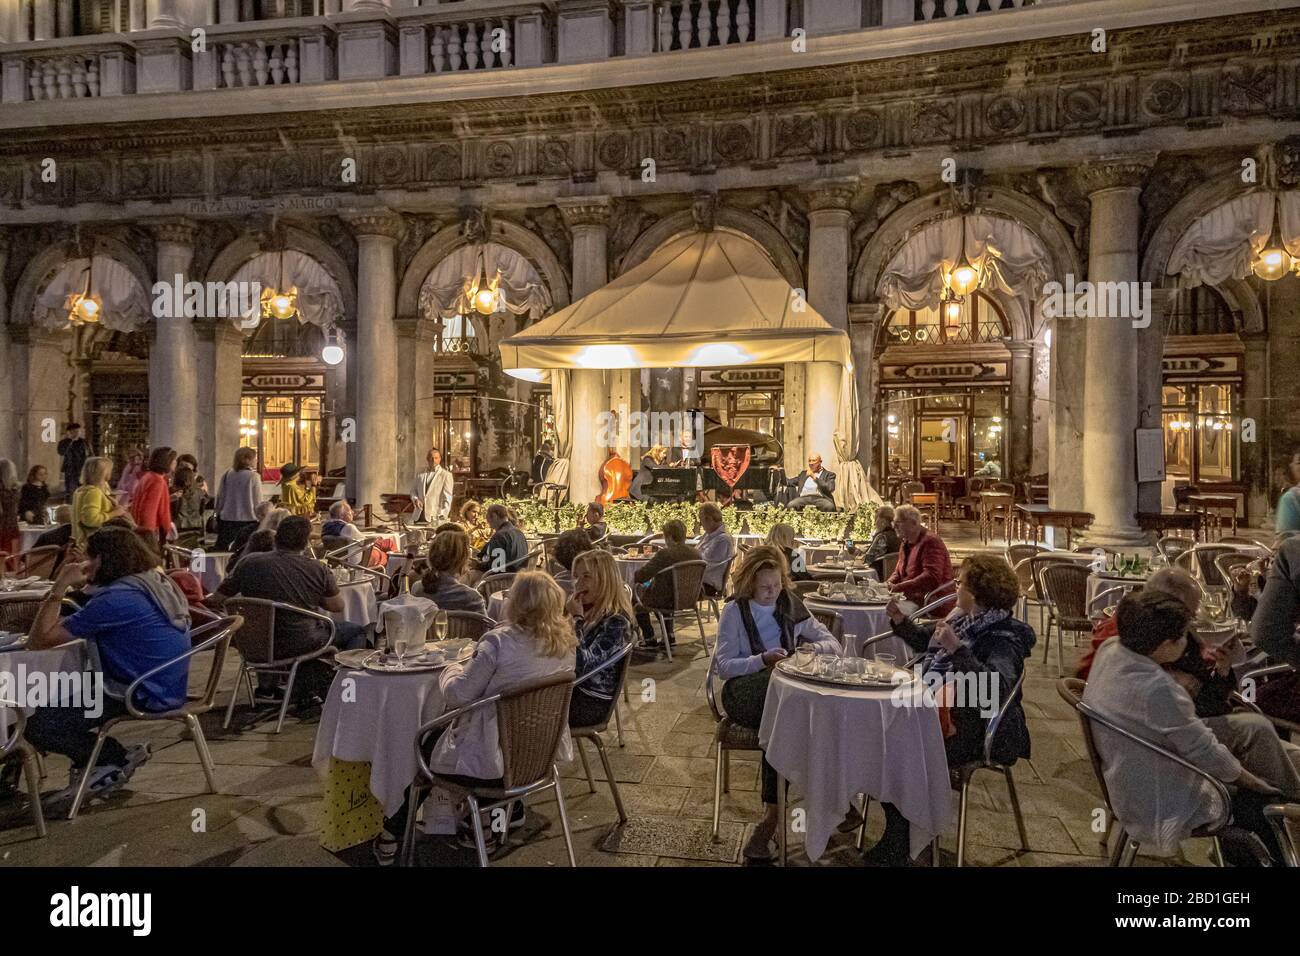 Les gens assis à l'extérieur de Caffè Florian un café célèbre au coeur de la place Saint-Marc comme le groupe résident joue en début de soirée, Venise Italie Banque D'Images